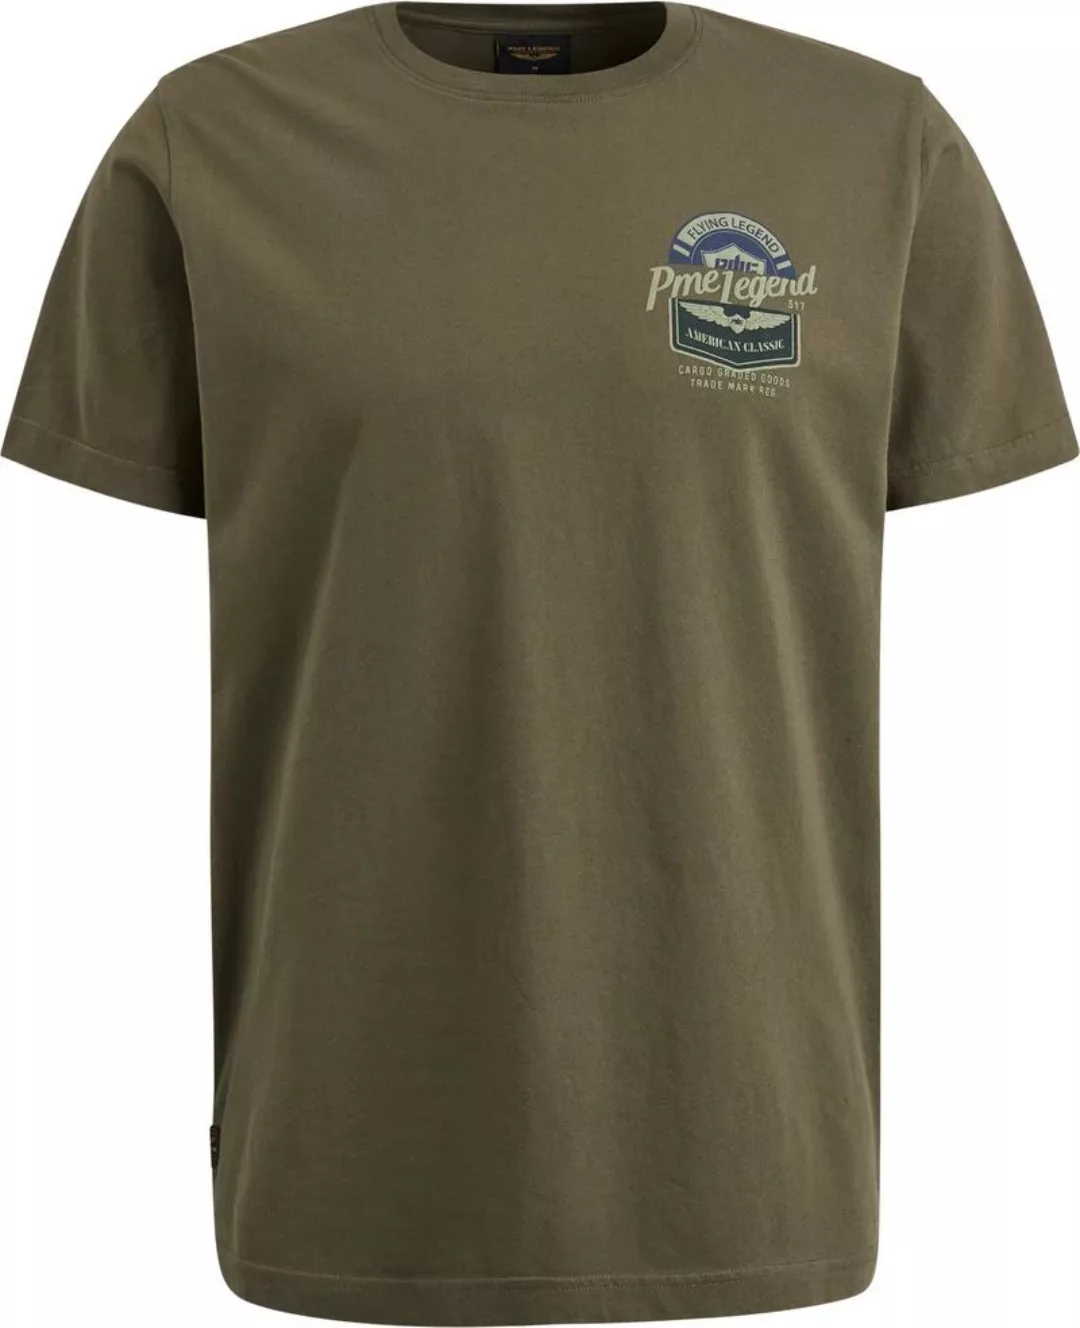 PME Legend Jersey T-Shirt Druck Army - Größe XL günstig online kaufen